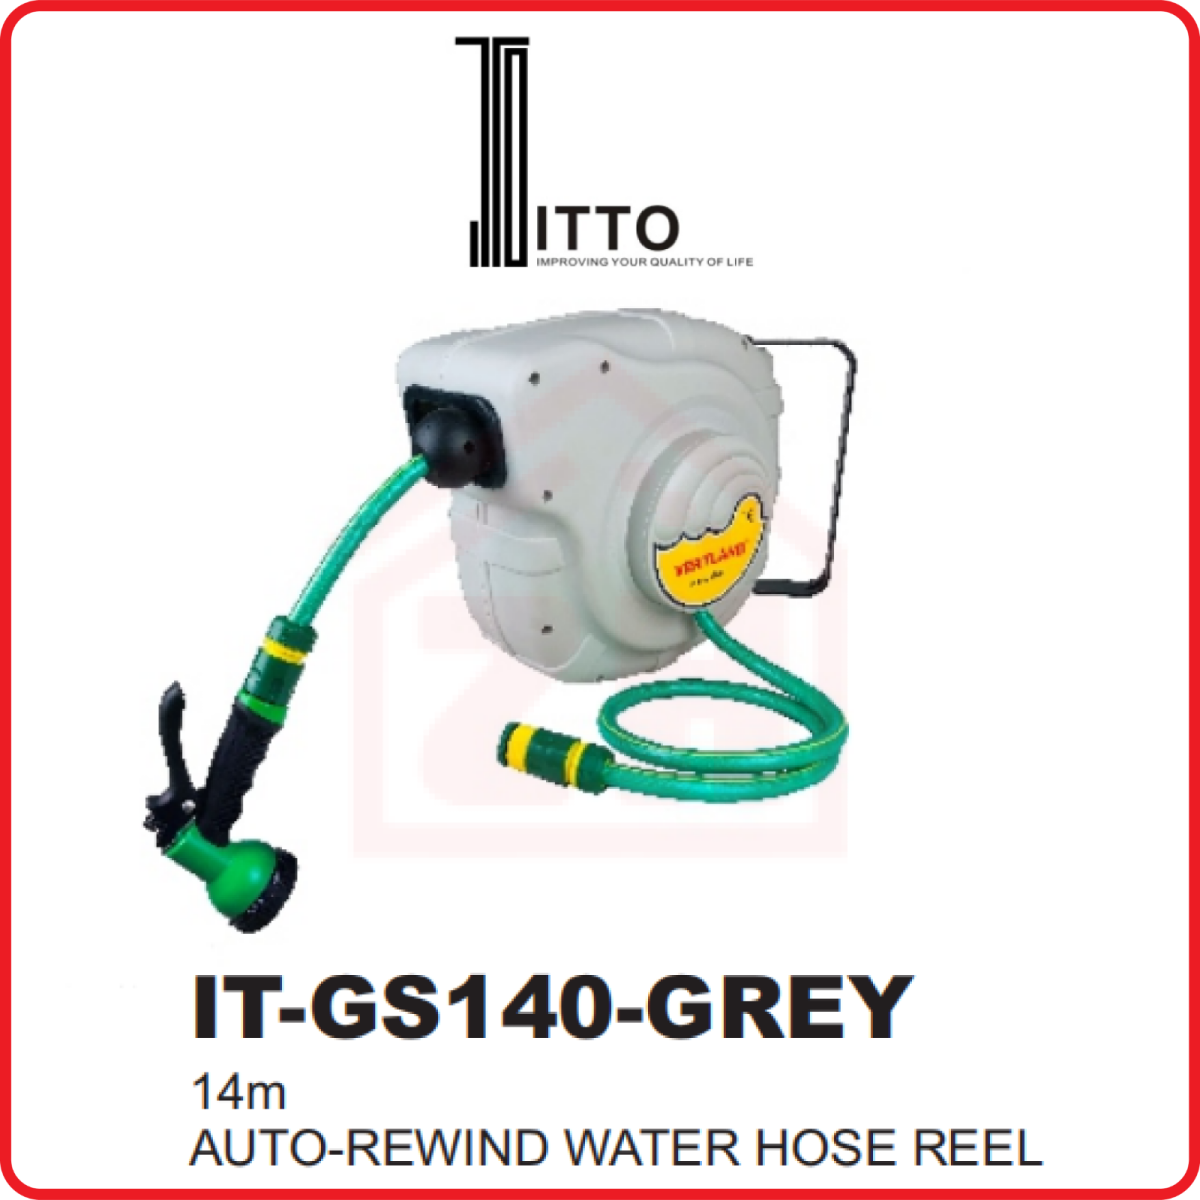 ITTO Auto-Rewind Water Hose Reel(14M) IT-GS140-GREY ITTO AUTO